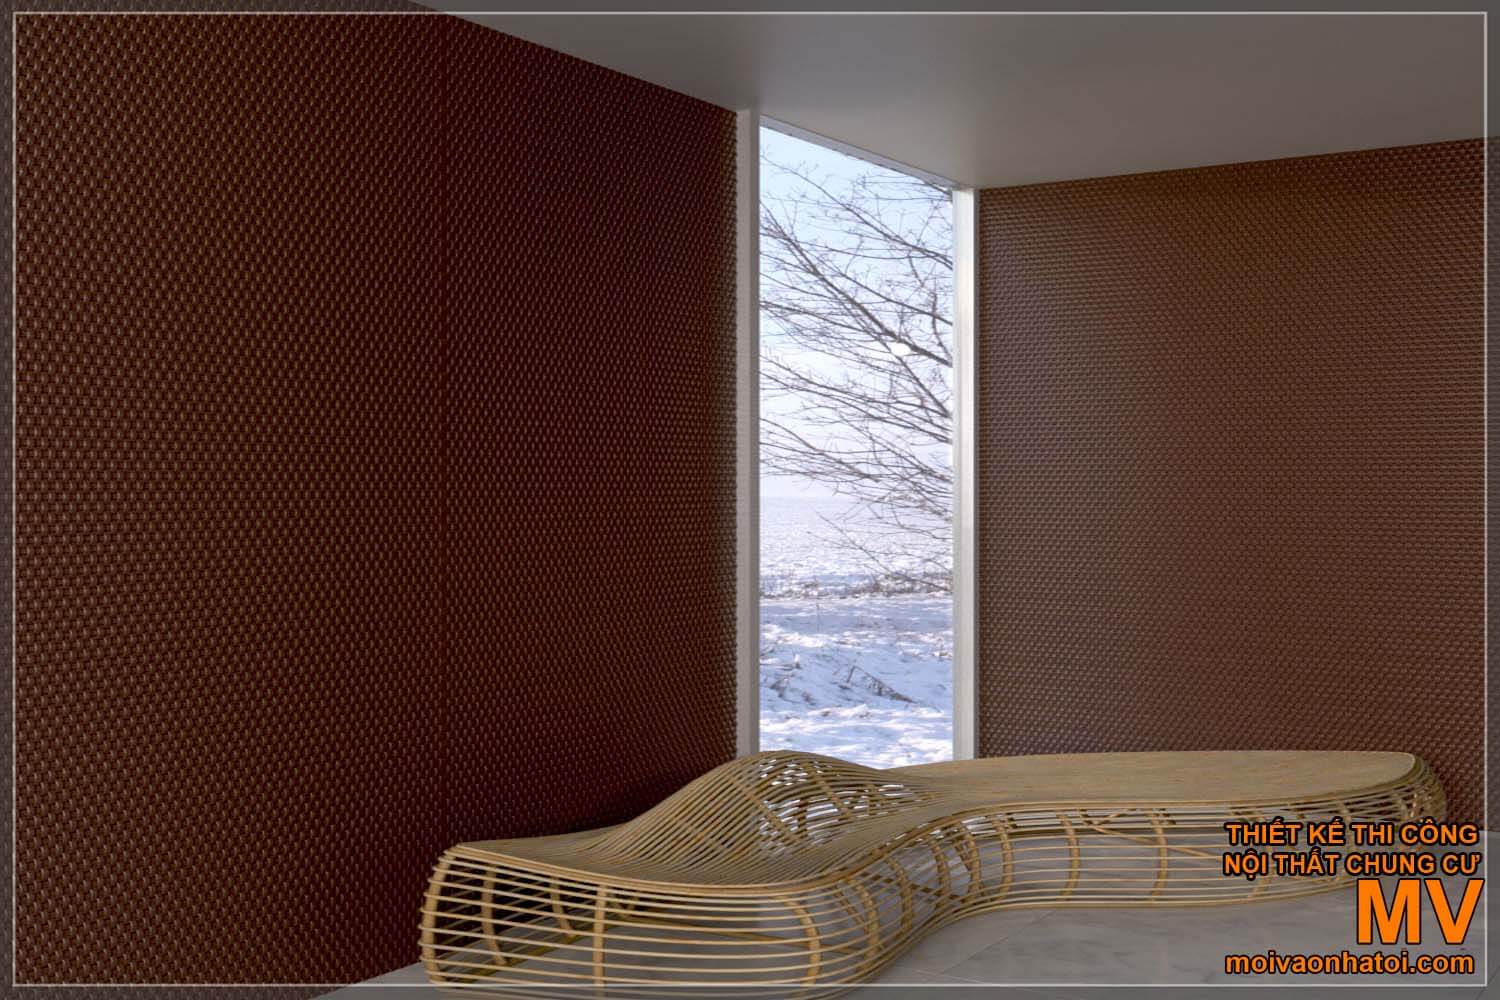 아름다운 3D 벽 패널